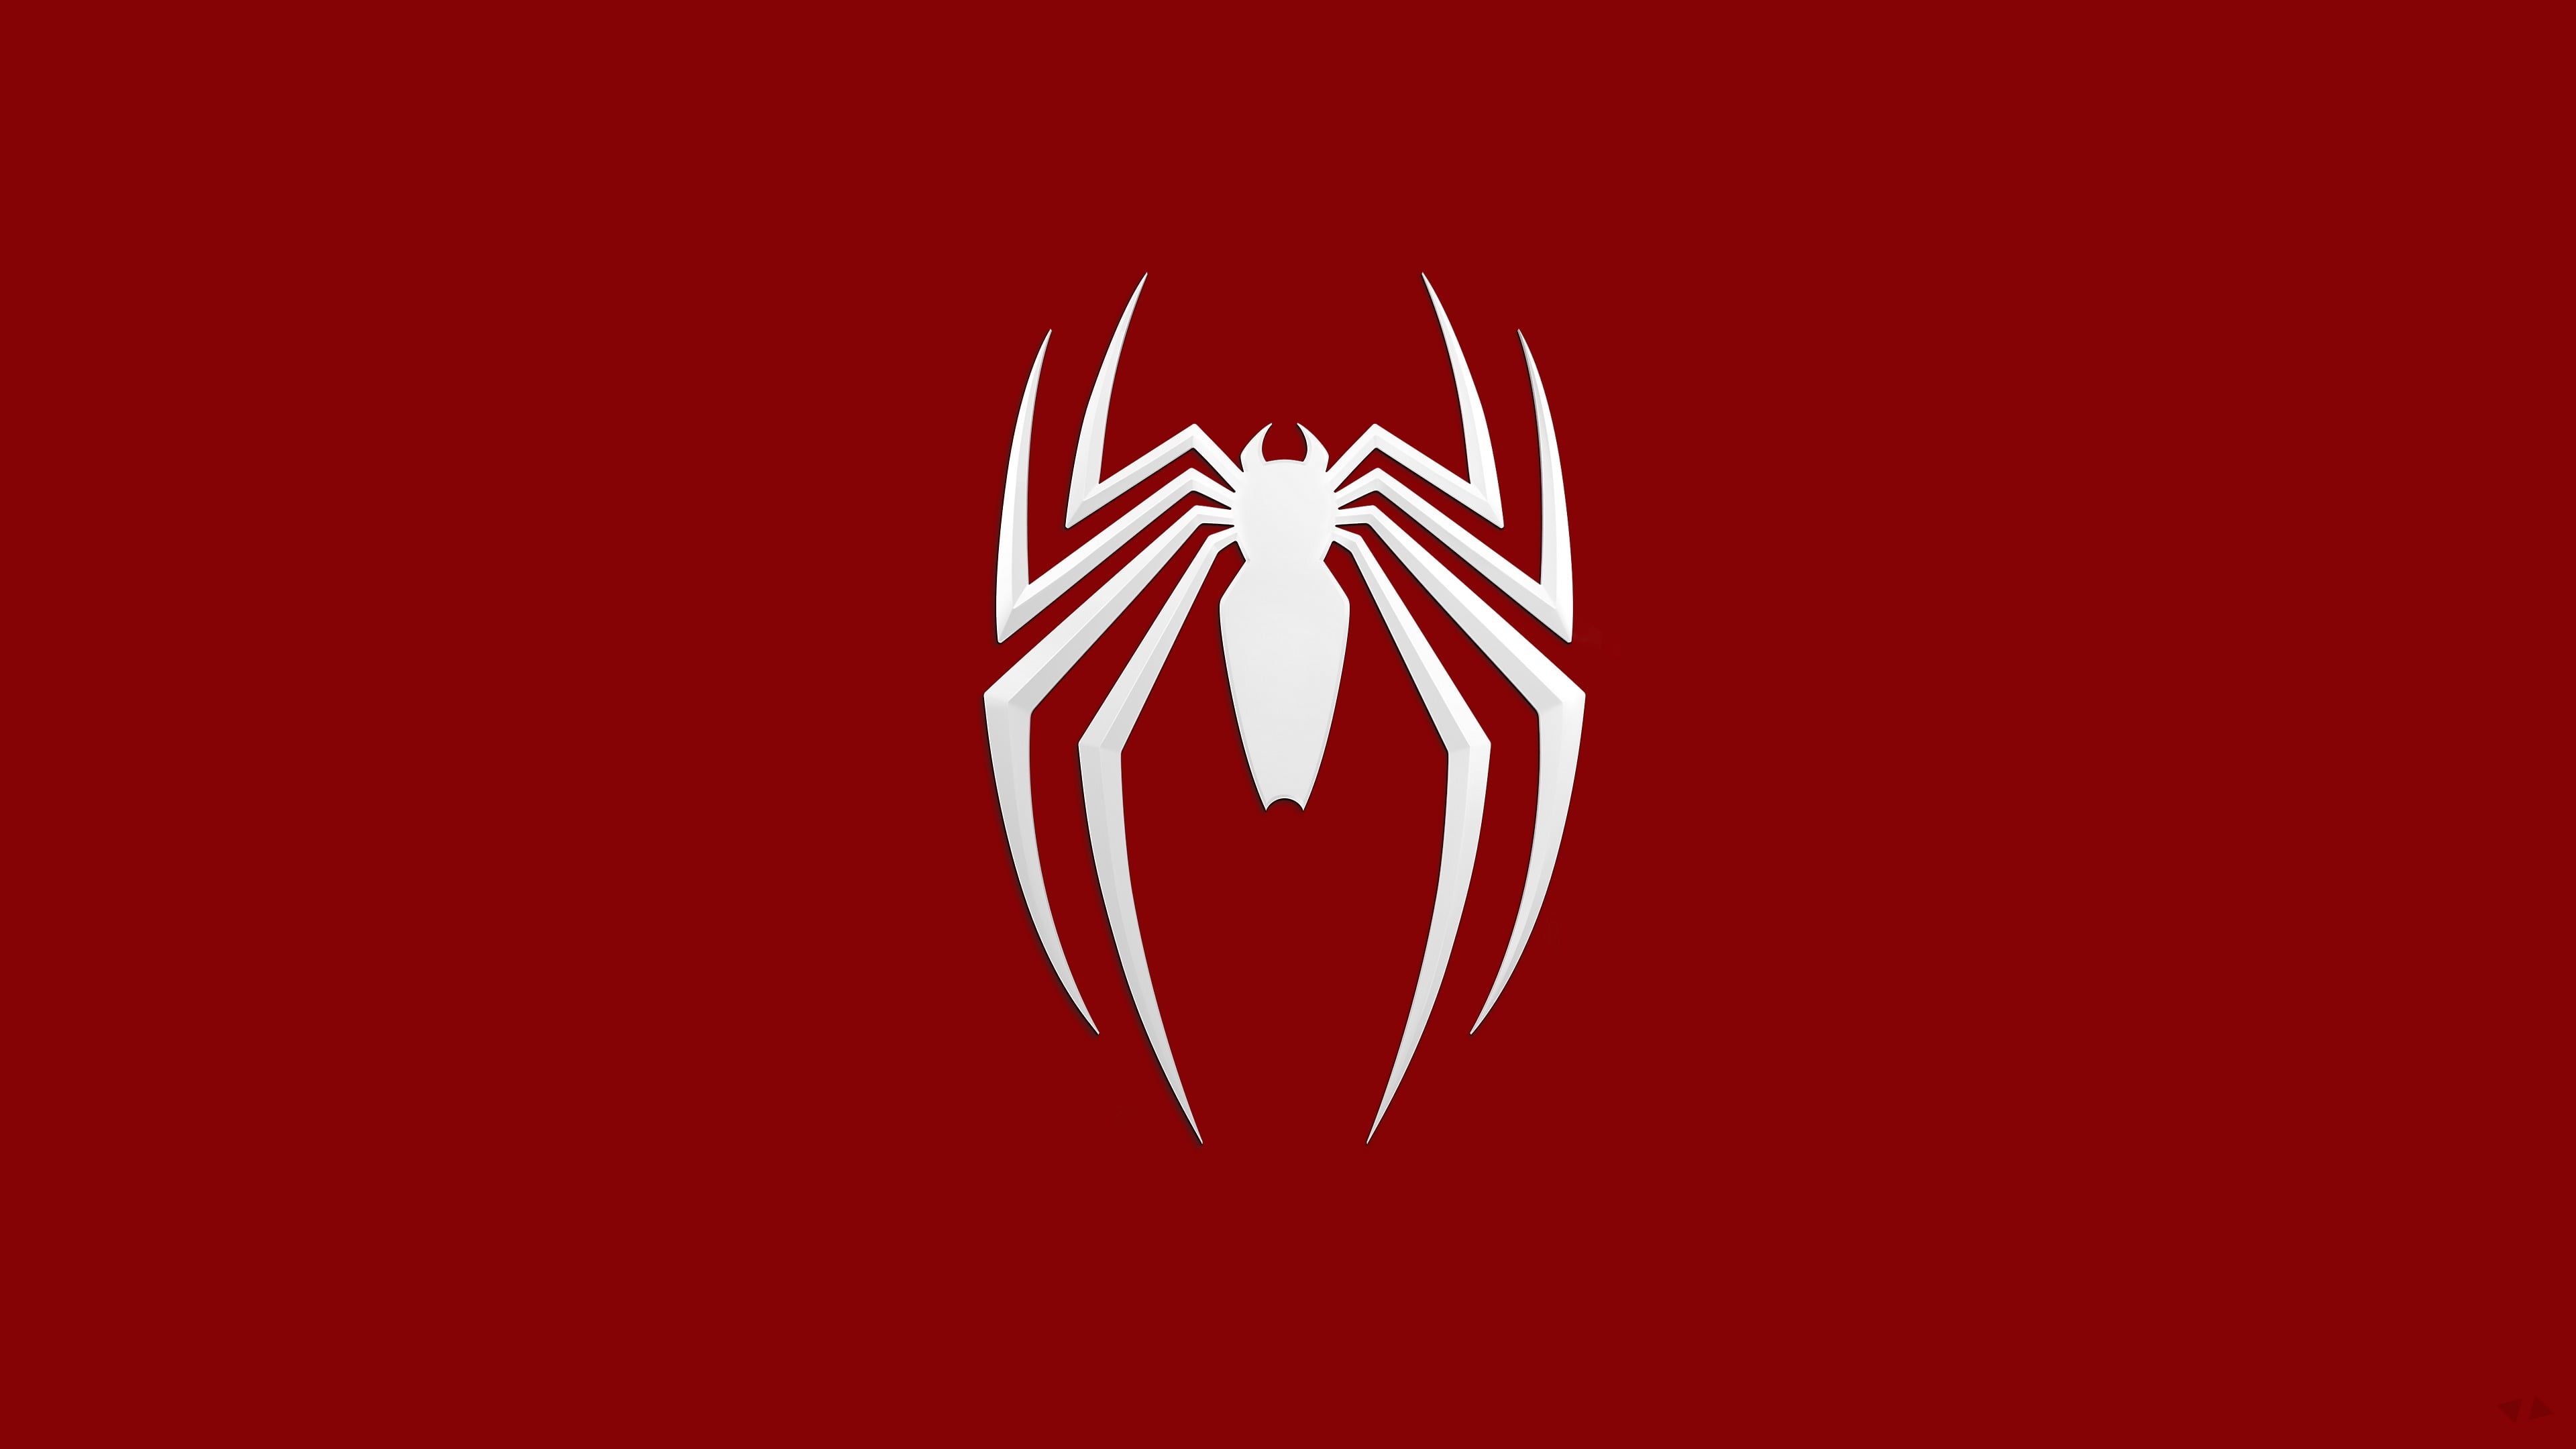 لوگوی مرد عنکبوتی زیبا و خاص با والپیپر قرمز 